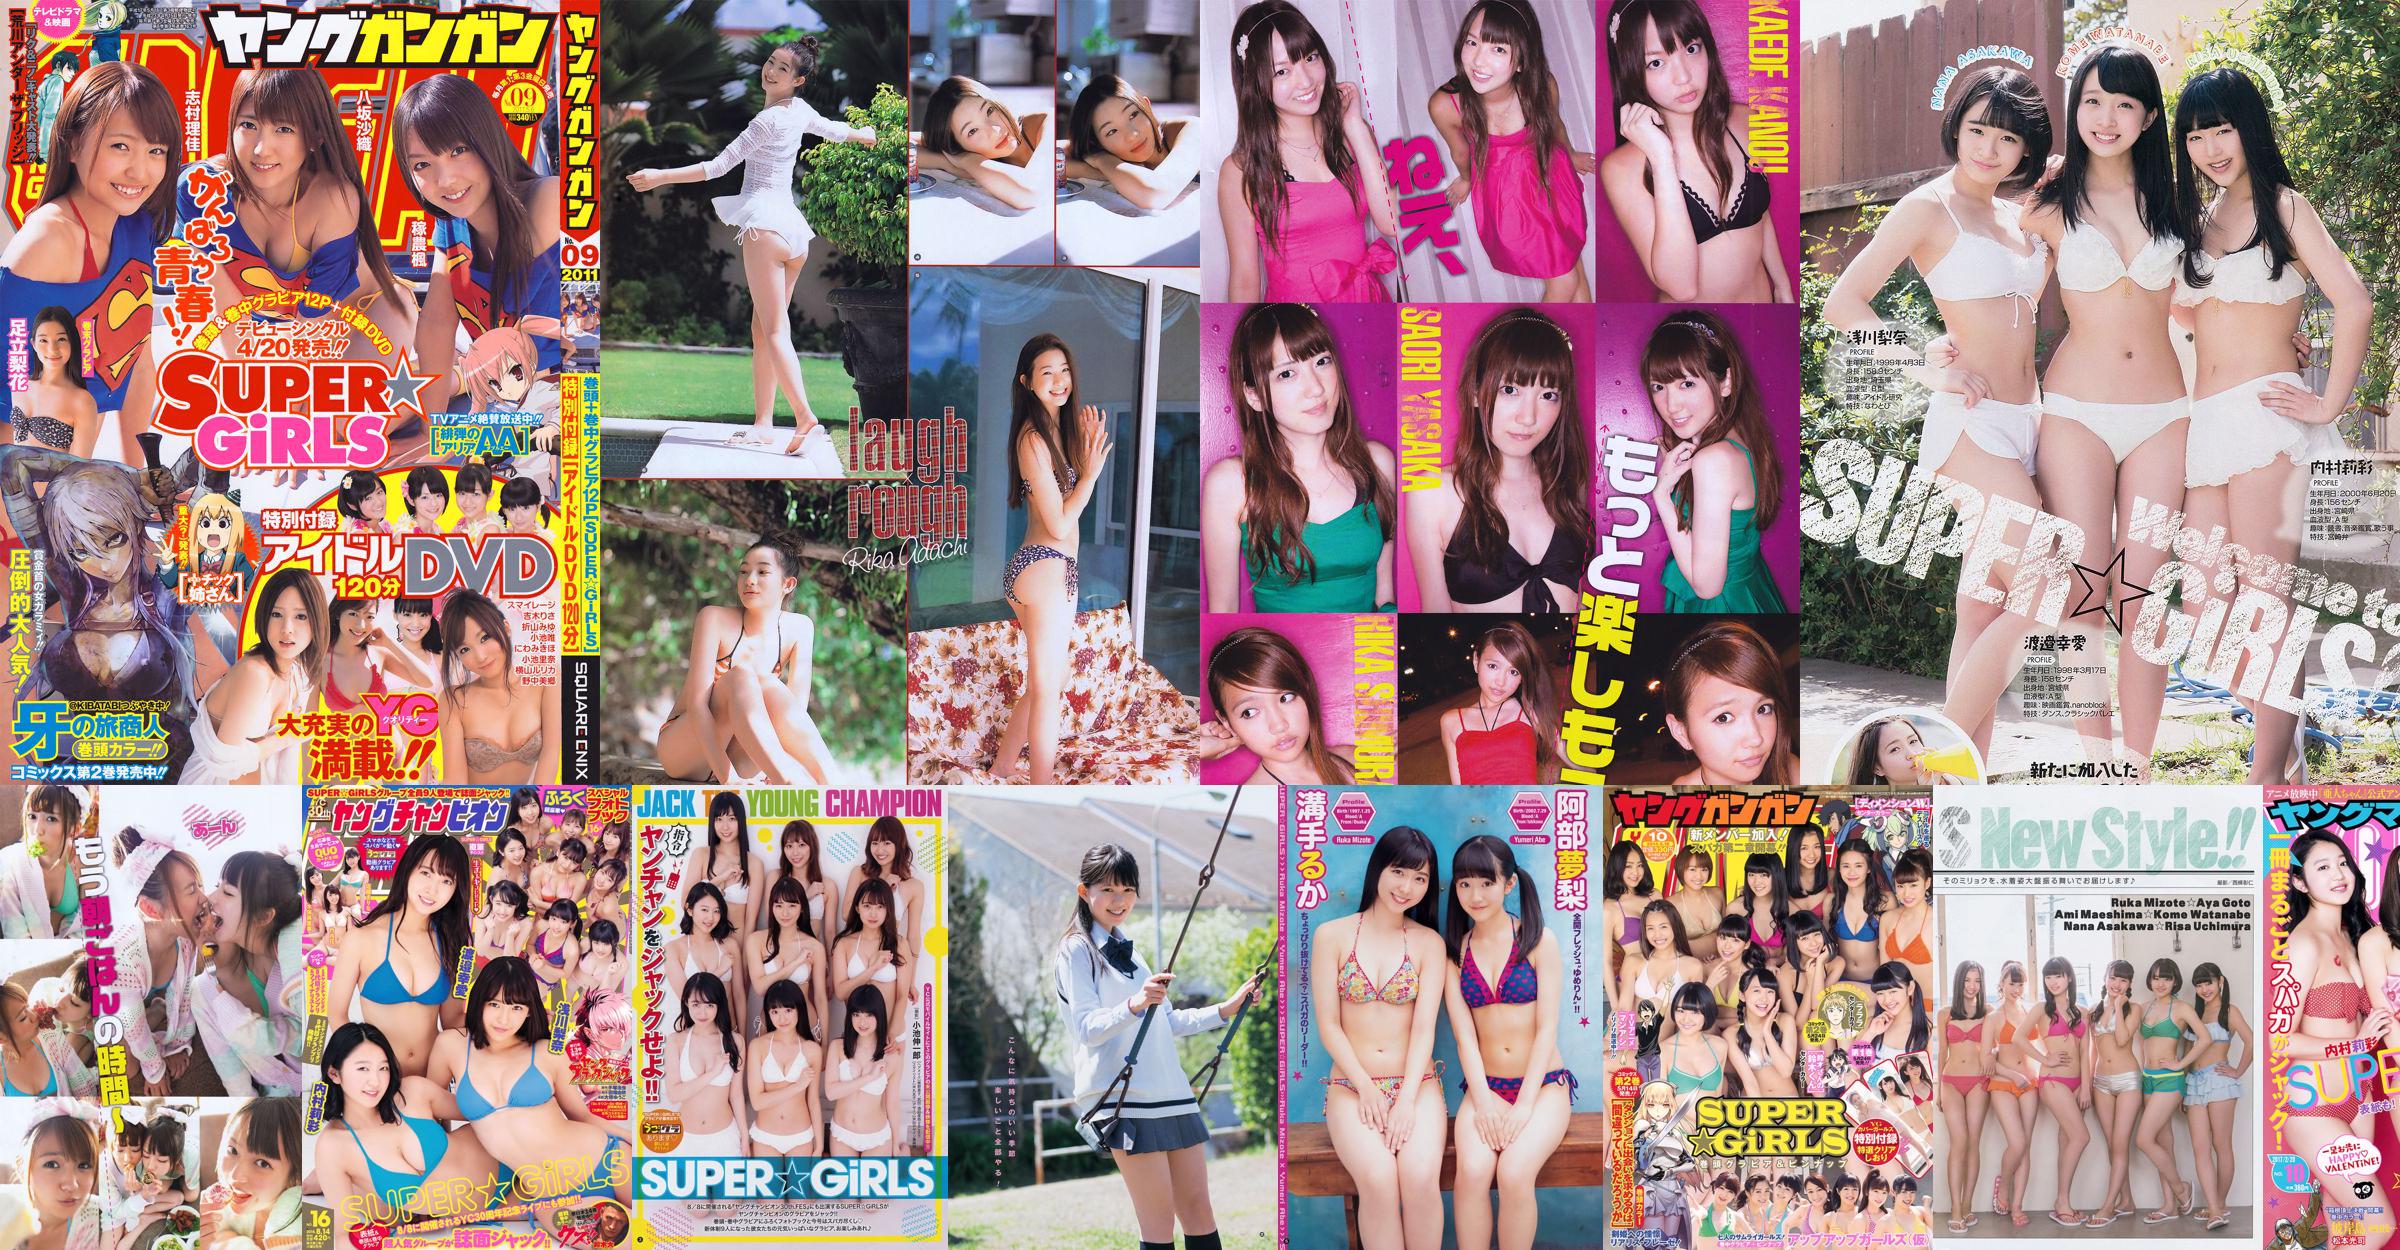 [Young Gangan] SUPER ☆ GiRLS Momose Misaki 2011 No.14 Photo Magazine No.fb4958 Trang 1